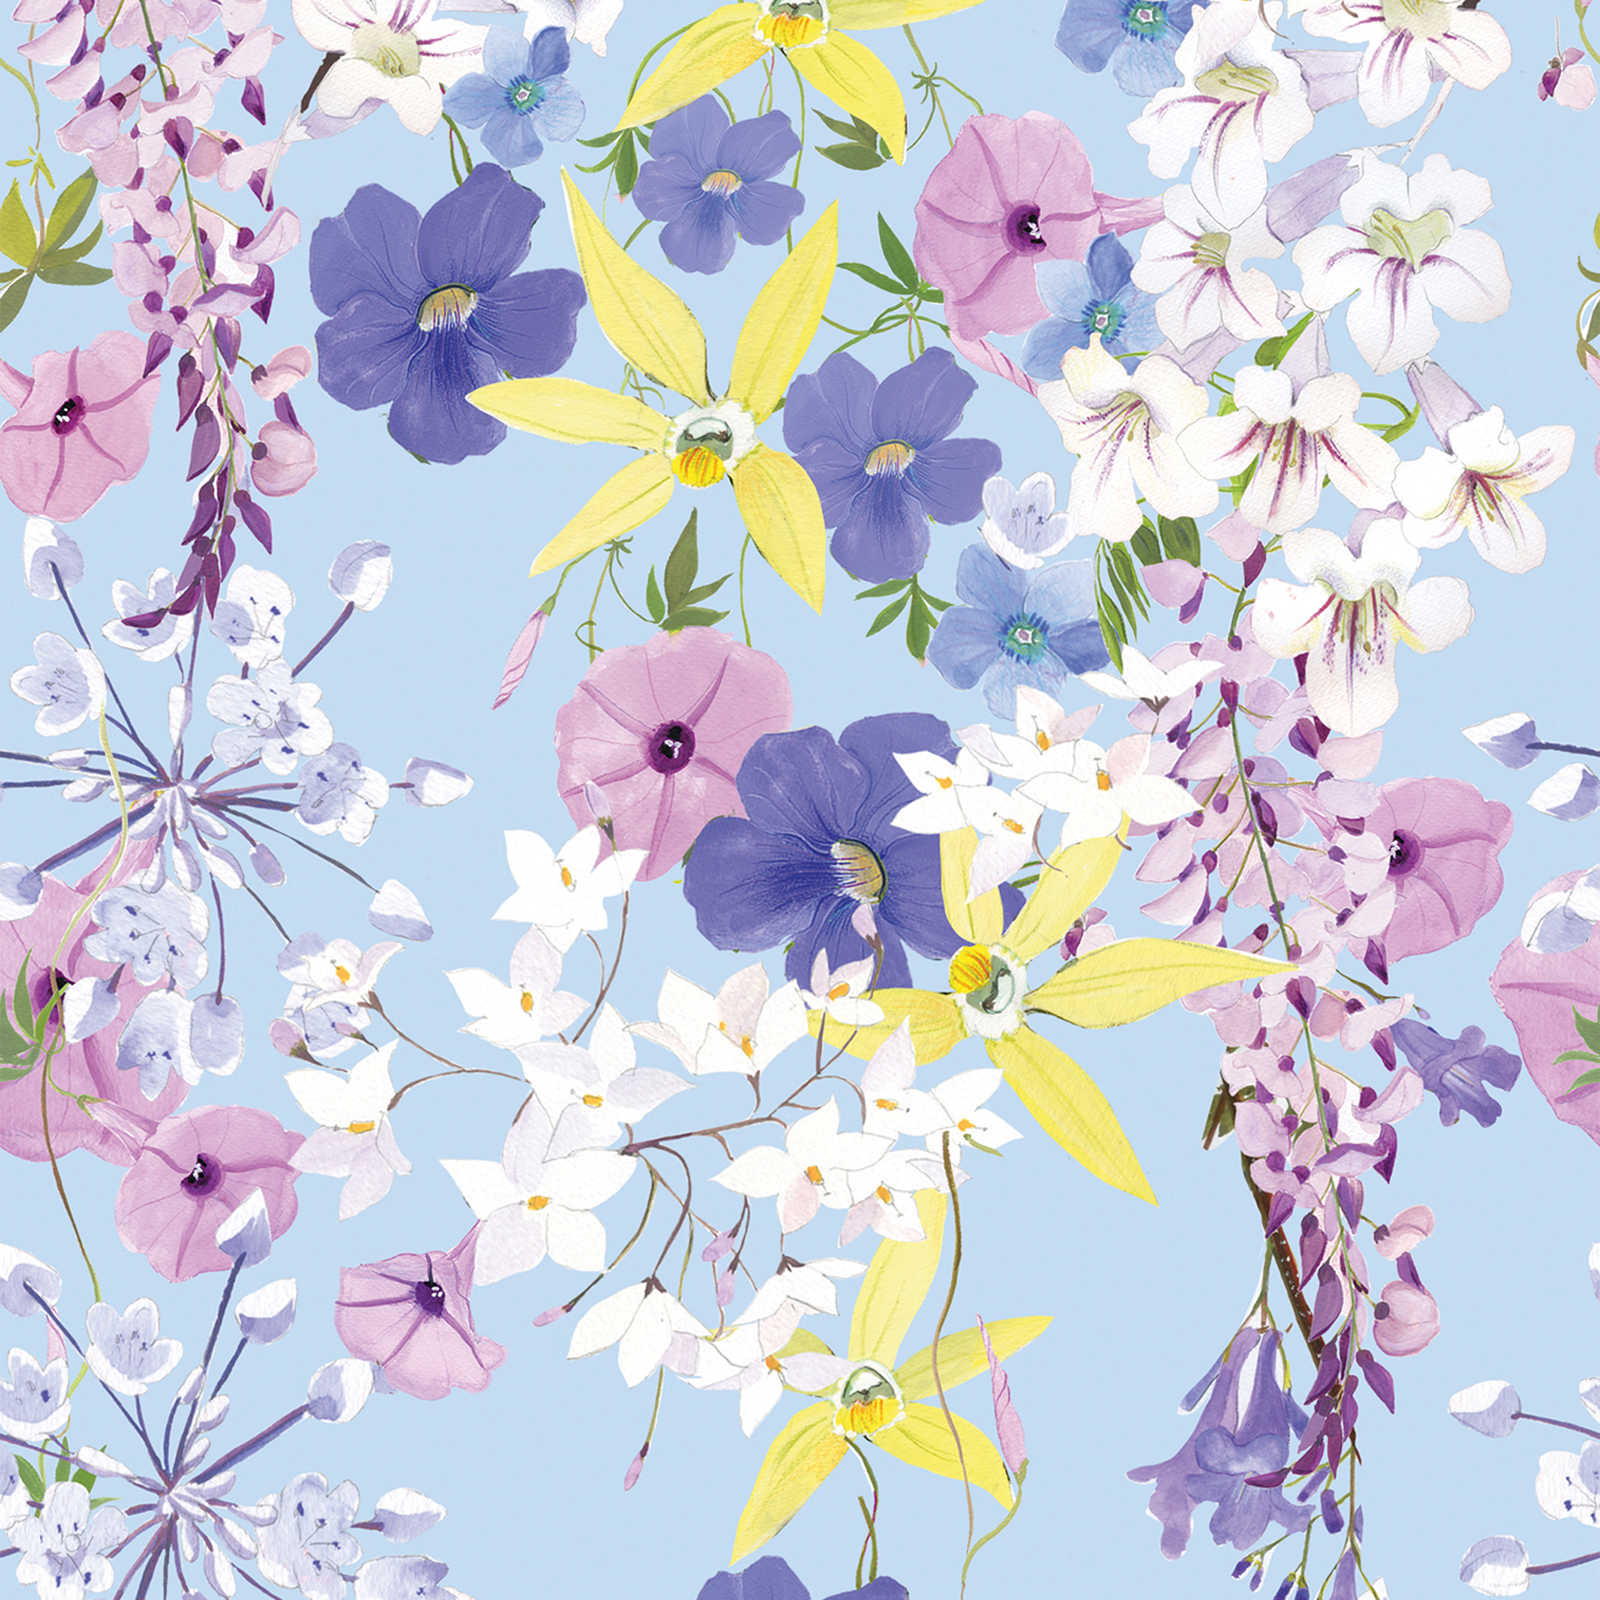 Onderlaag behang met bloemmotief in koele kleuren - veelkleurig, lila, geel
